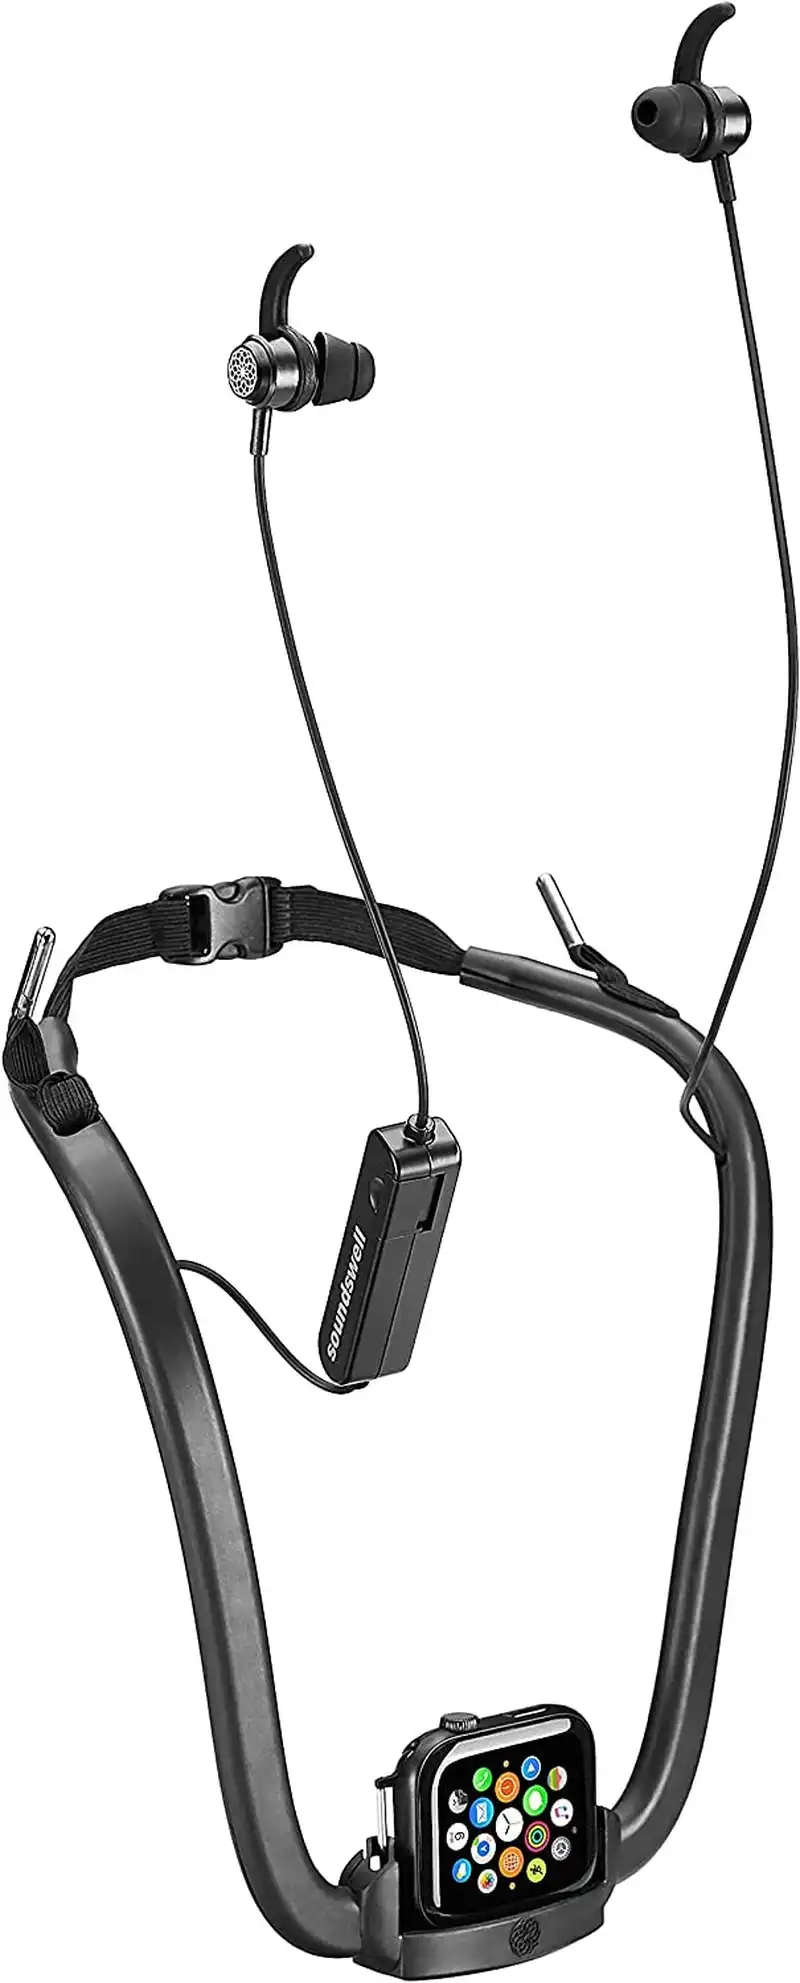 SoundSwell Smartwatch Series - Waterproof Action Headphones